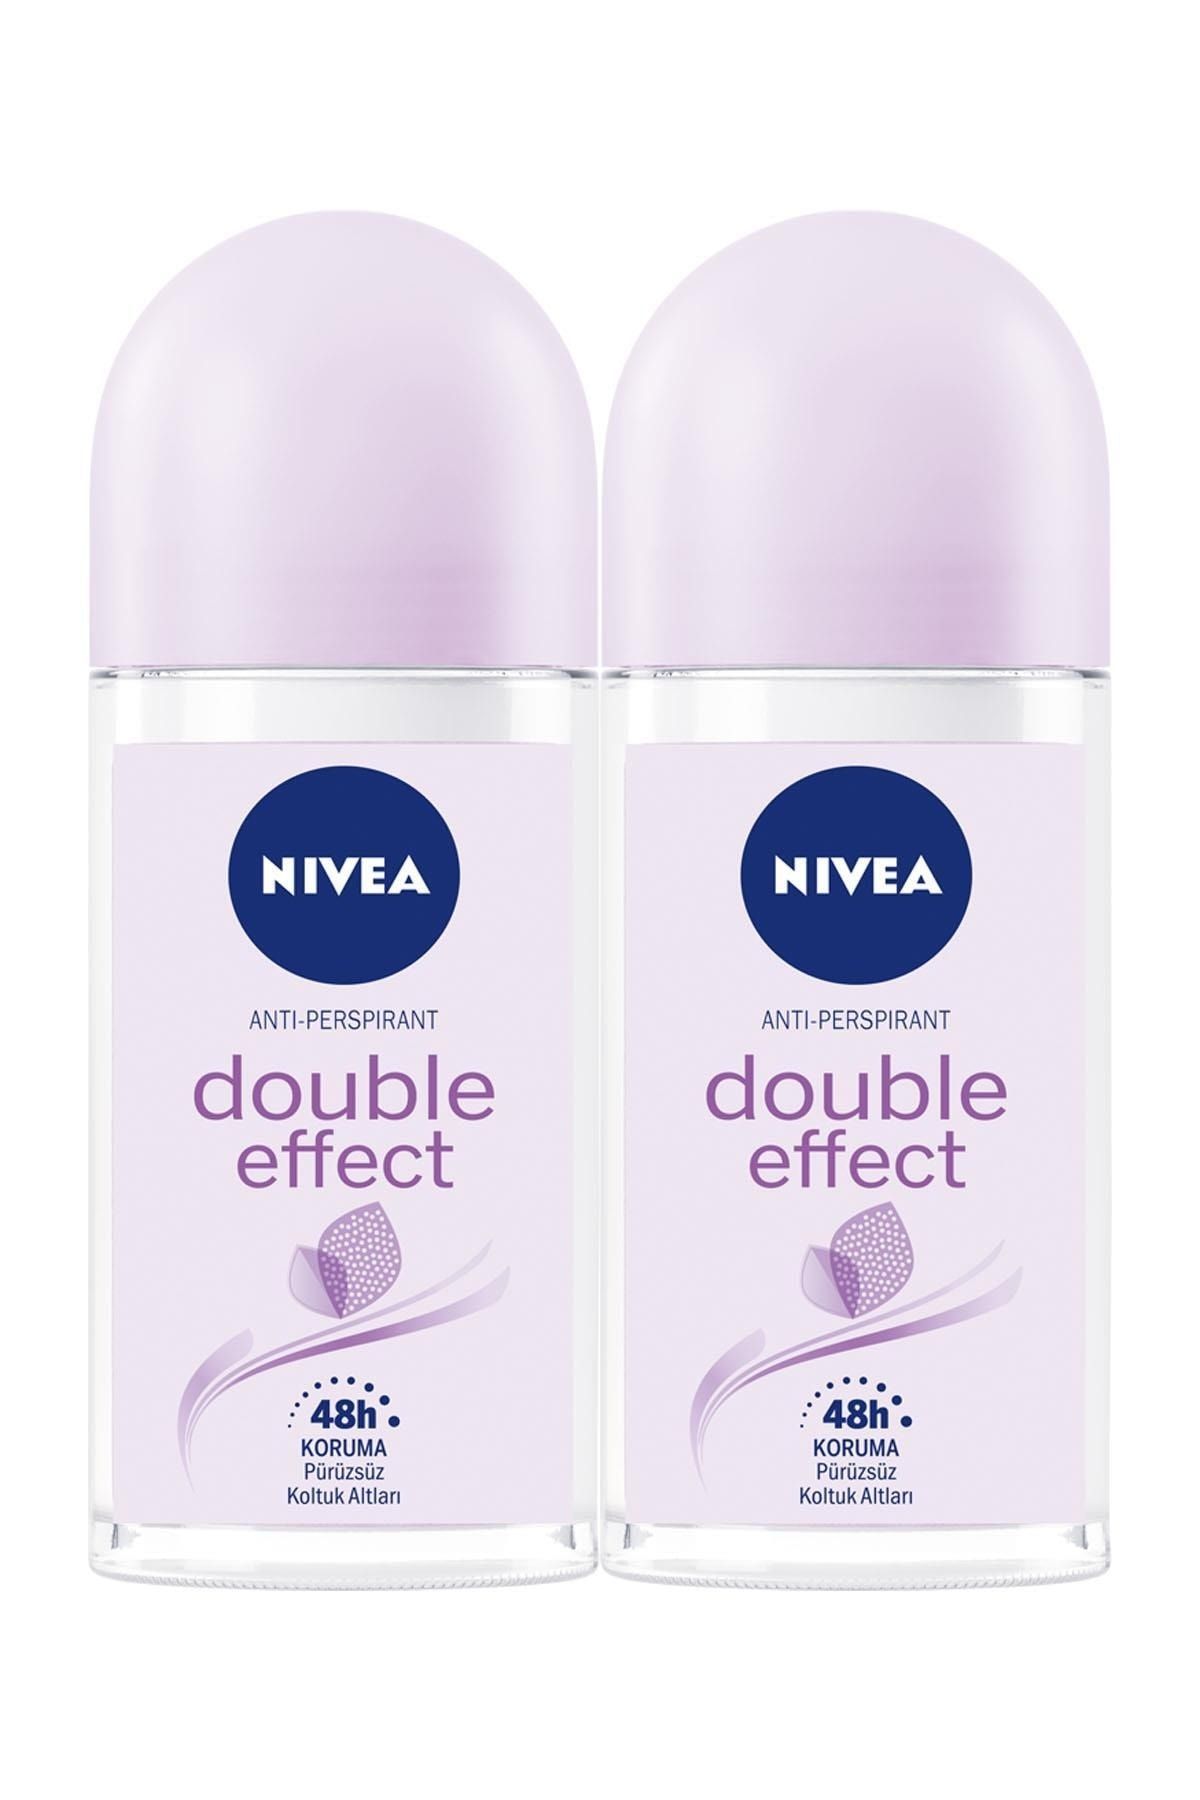 NIVEA Kadın Roll On Deodorant Double Effect 50mlx2, 48 Saat Koruma,Pürüzsüz Koltuk Altı